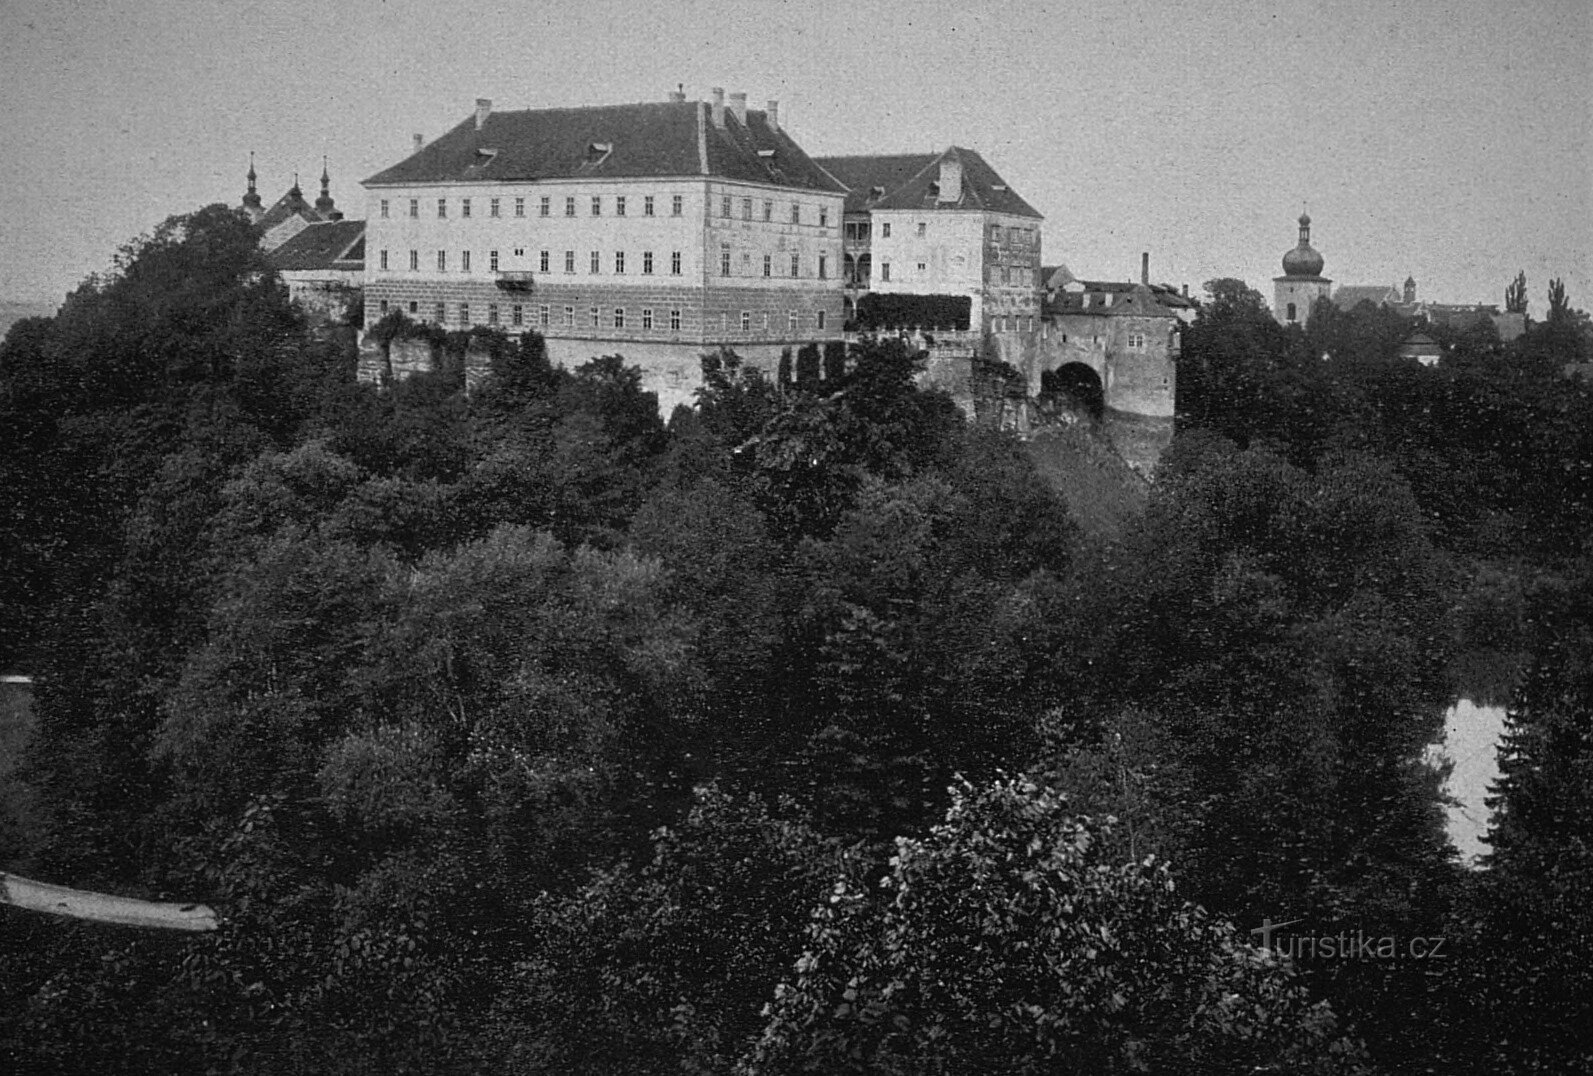 Kasteel in Opočno in 1910 (de kerk van de Heilige Drie-eenheid bevindt zich in de linkerbovenhoek)